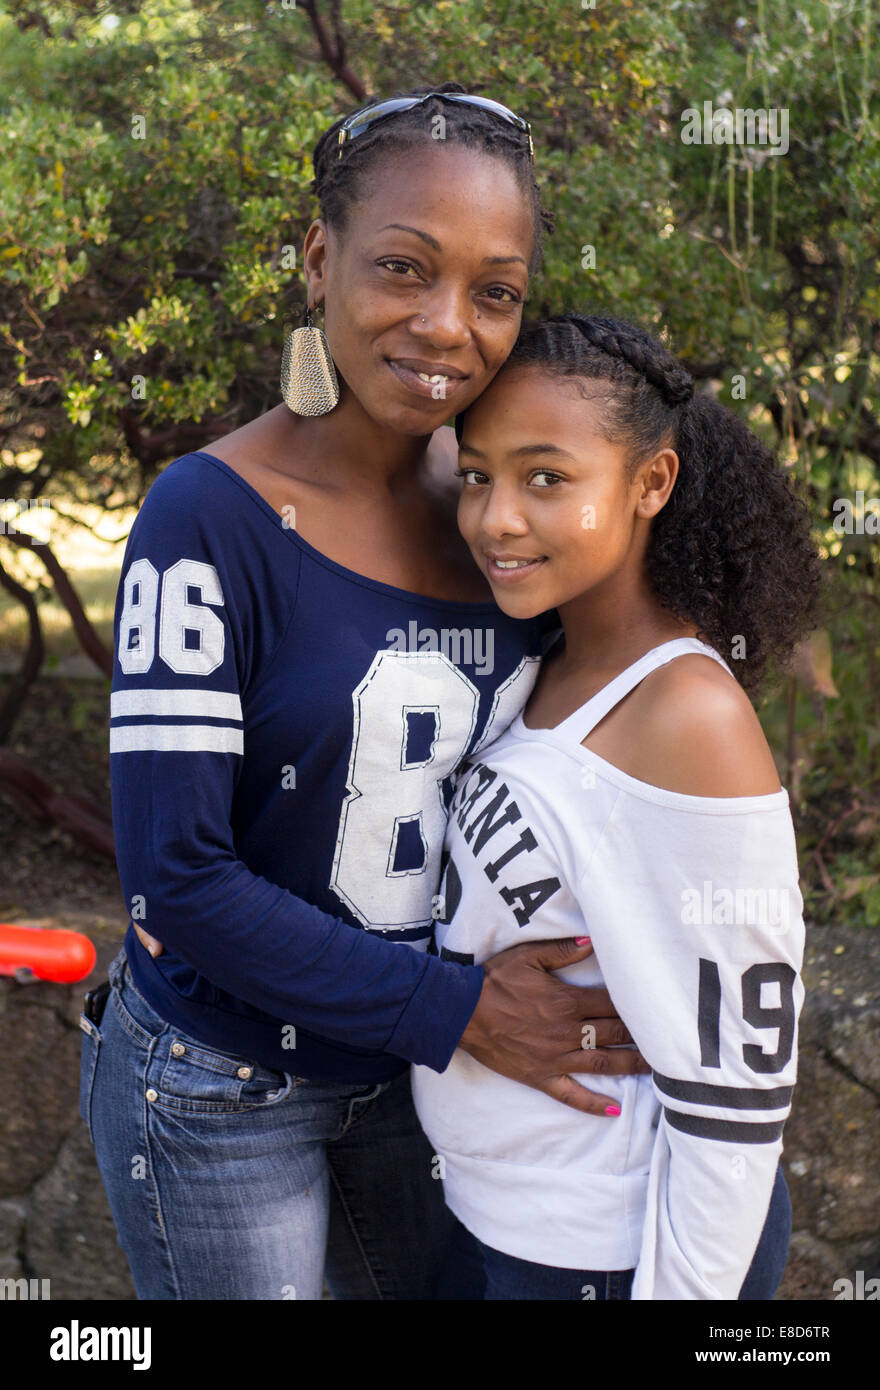 Afro-Amerikaner, Mutter und Tochter, Geburtstagsparty, Stadt Santa Rosa, Santa Rosa, Sonoma County, California, Vereinigte Staaten von Amerika, Nordamerika Stockfoto